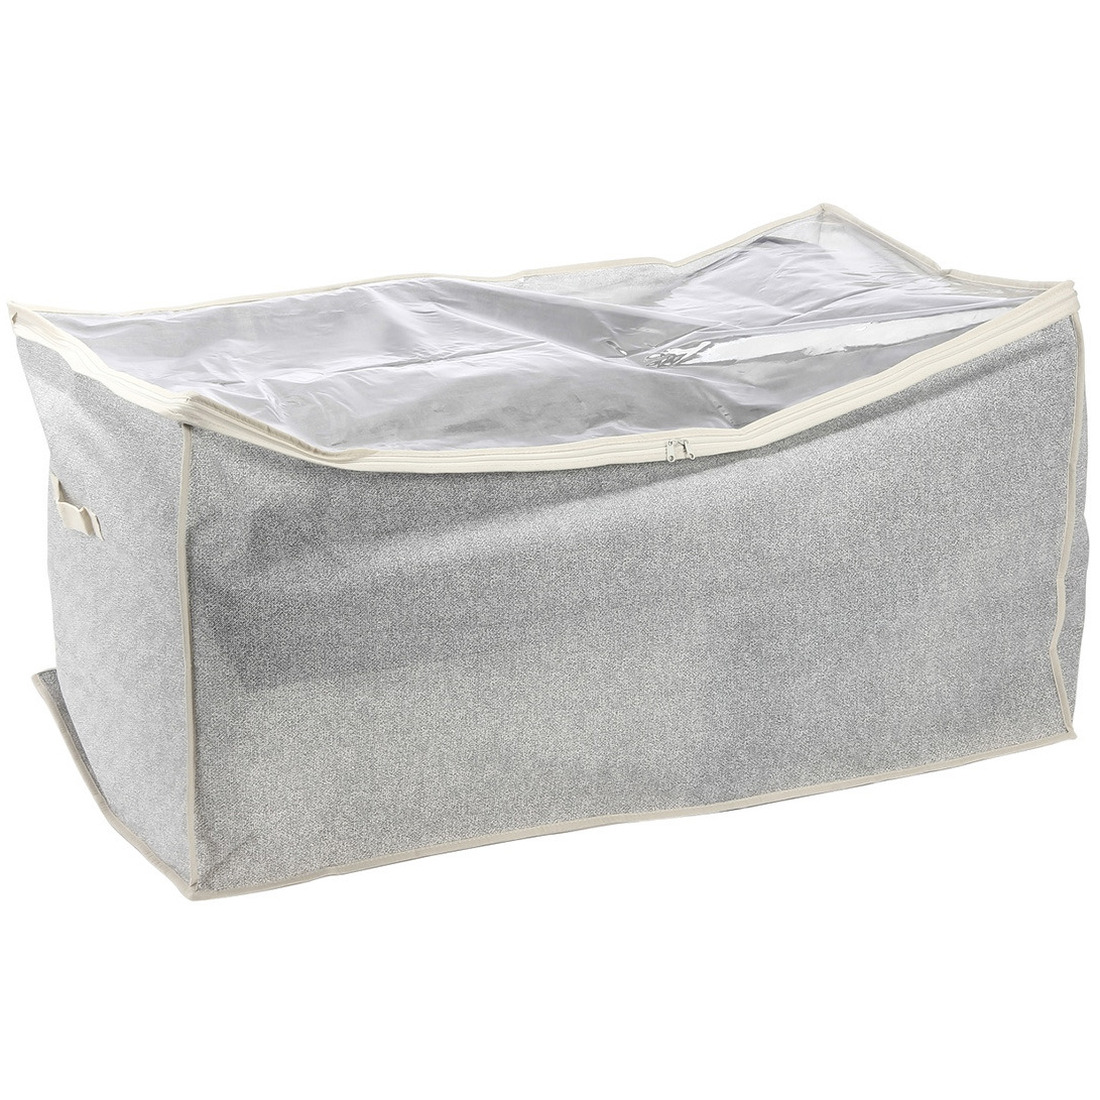 Opbergtas-beschermhoes beddengoed-kleding grijs polyester 91 x 53 x 47 cm